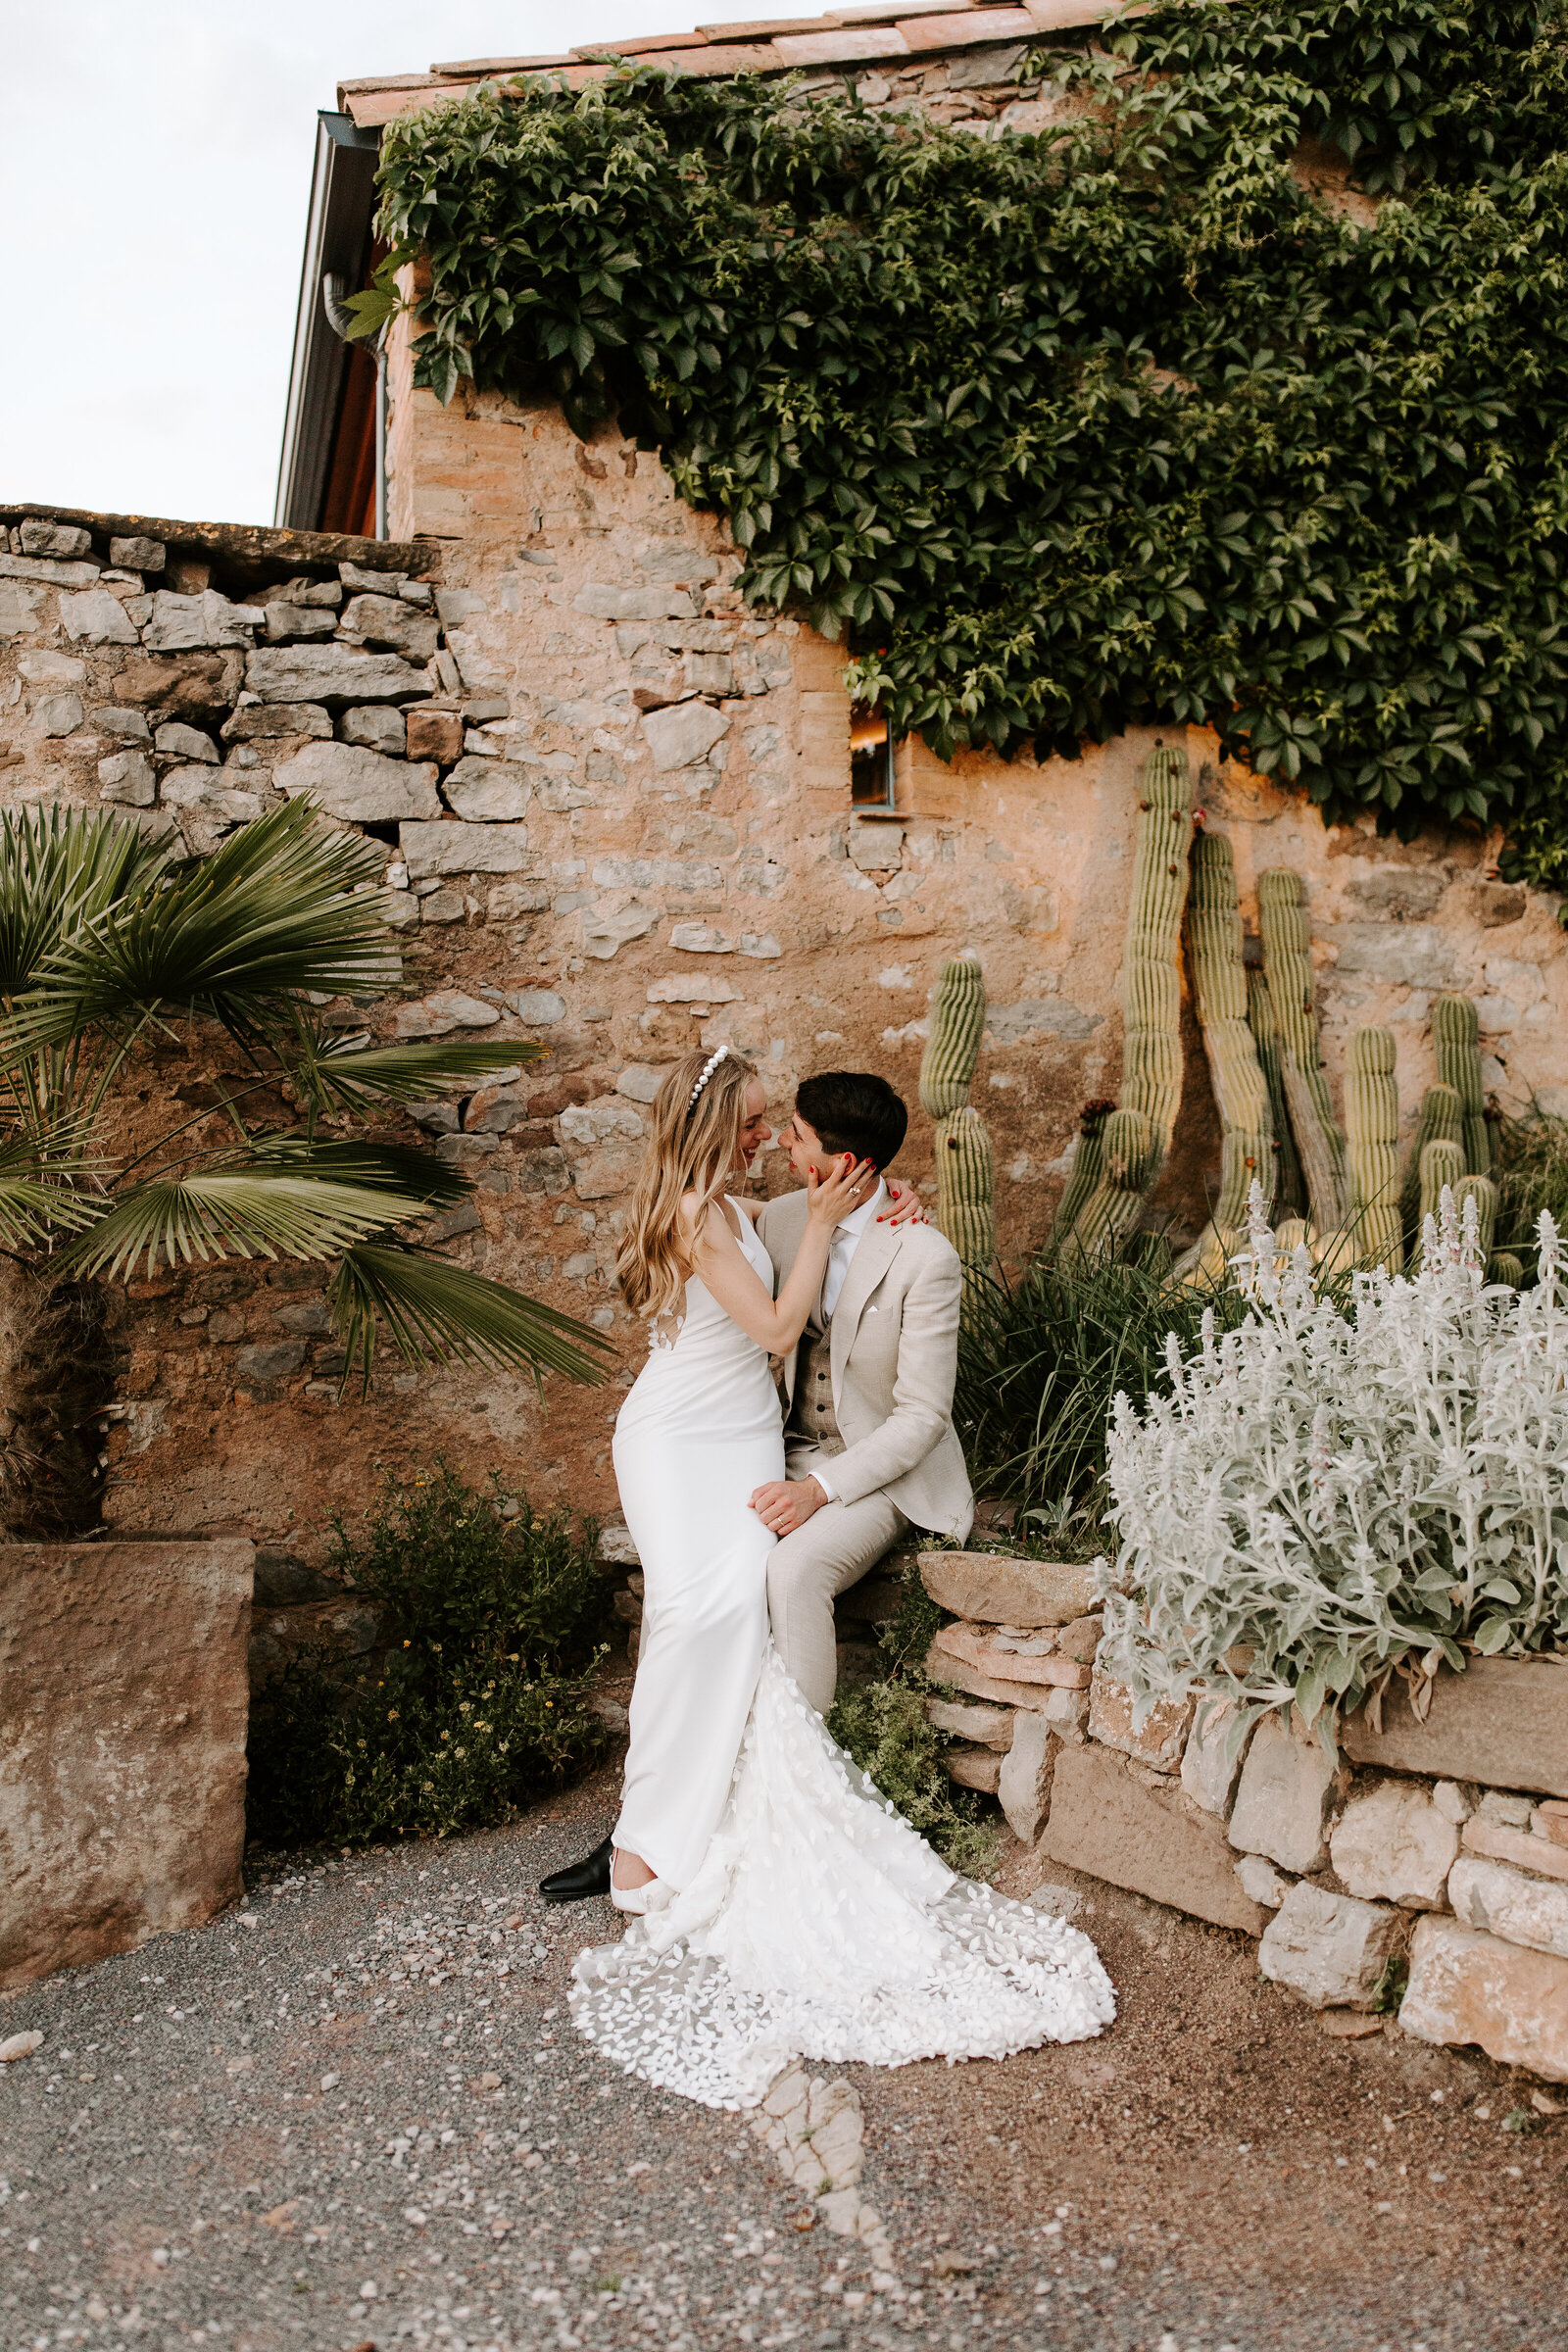 Barcelona-wedding-photographer-spain-elopement-luxury-candid-outdoor19